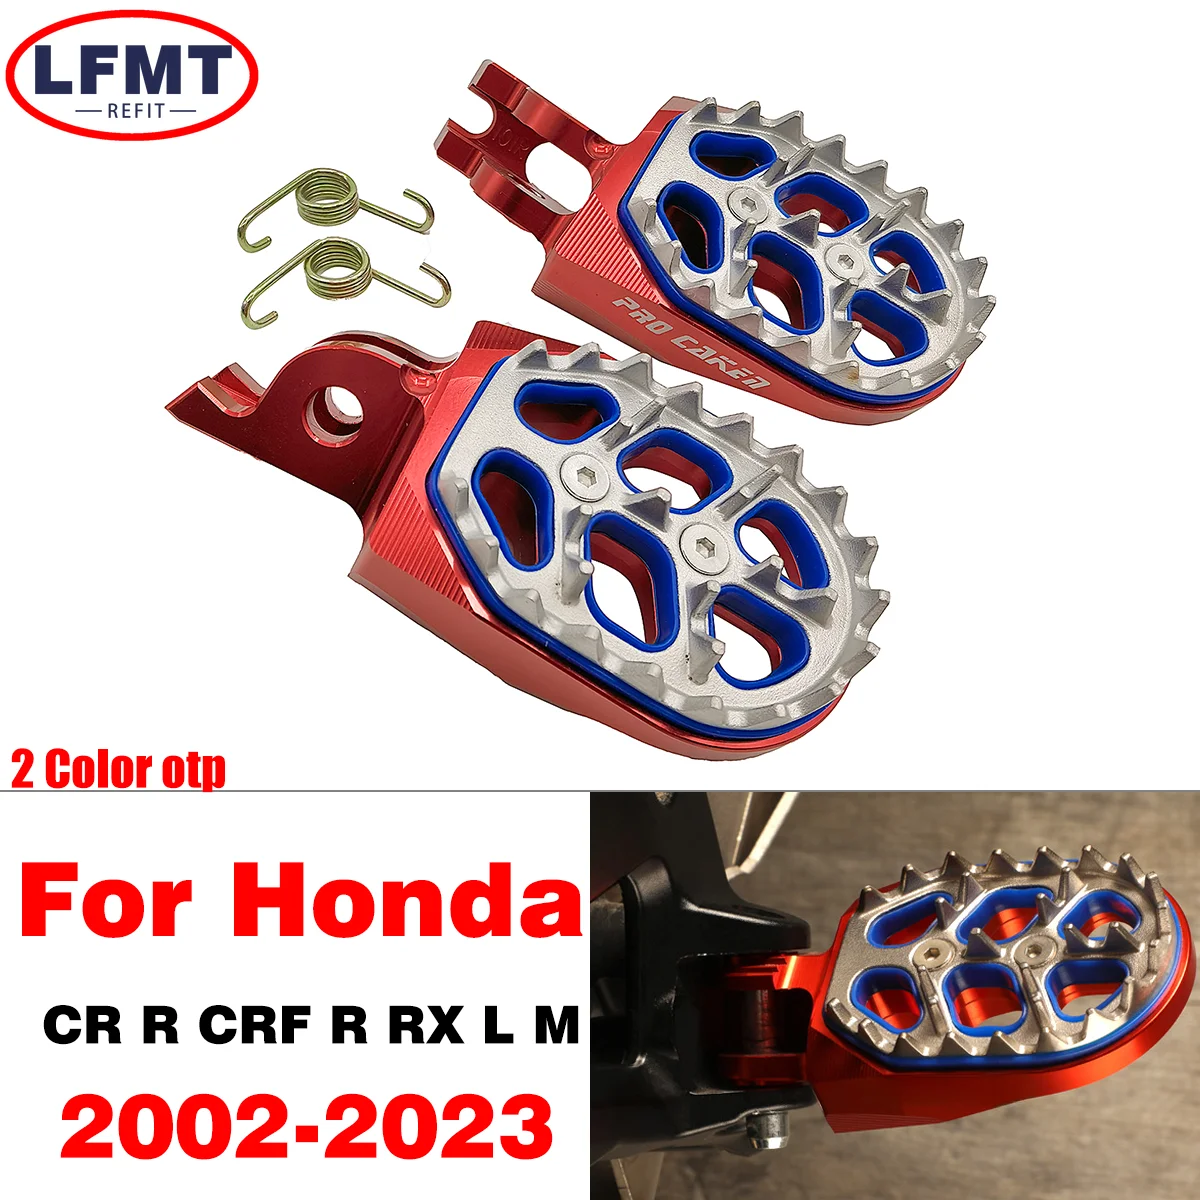 

Motorcycle CNC FootRest Footpegs Foot Pegs Pedals For HONDA CR250R CRF 150R 250R 450R 250 450 X RX L M CR 125 250 150R2002-2021